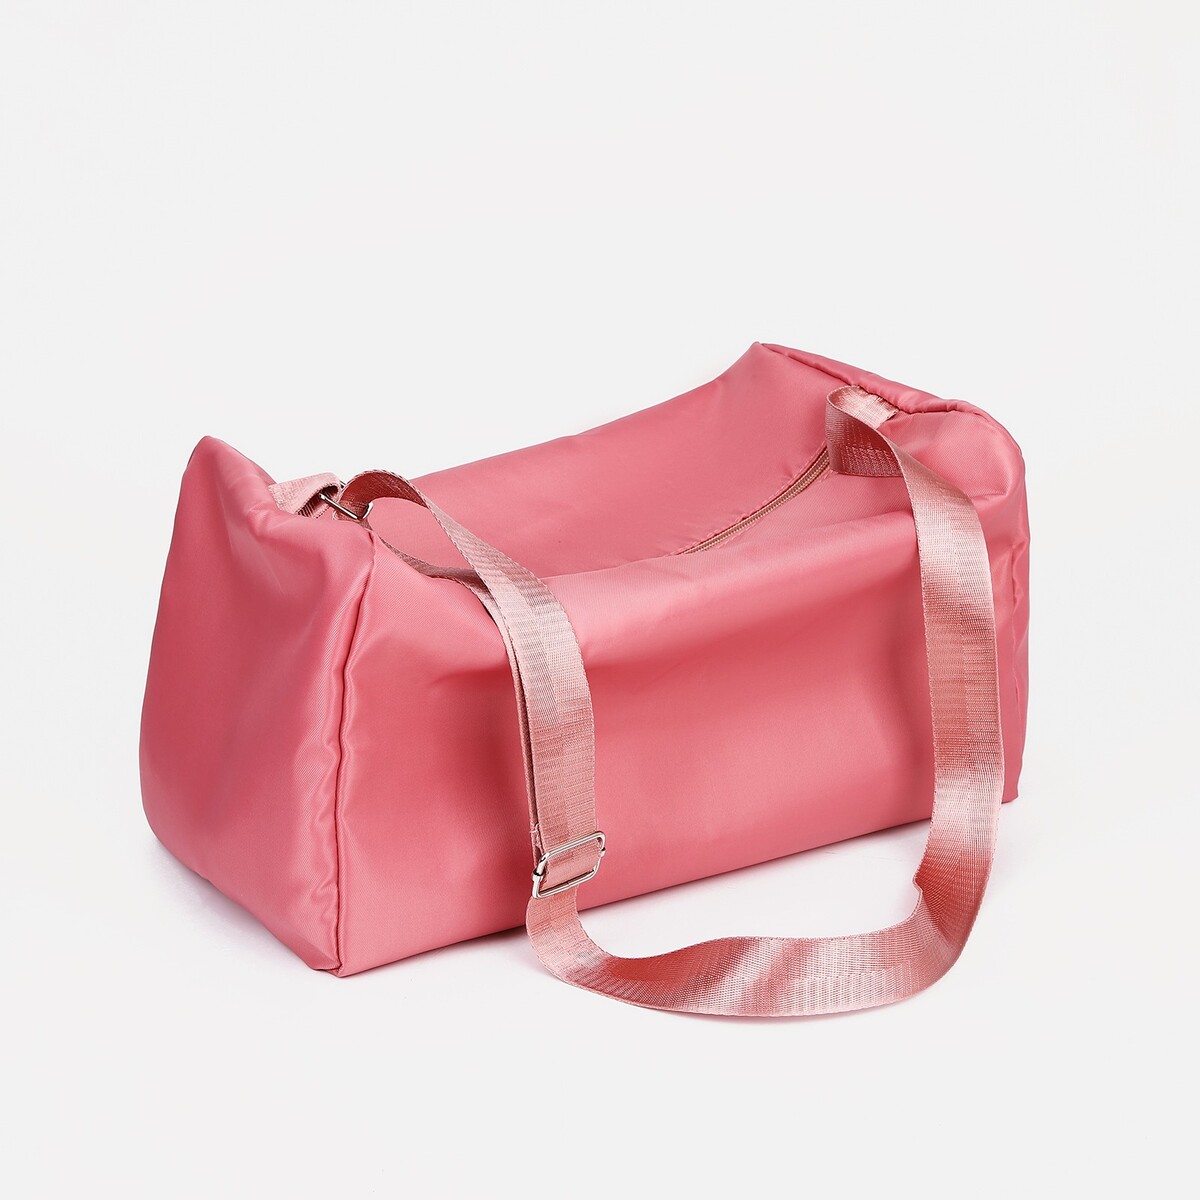 Сумка спортивная на молнии, регулируемый ремень, цвет розовый сумка багет отдел на молнии регулируемый ремень пудра